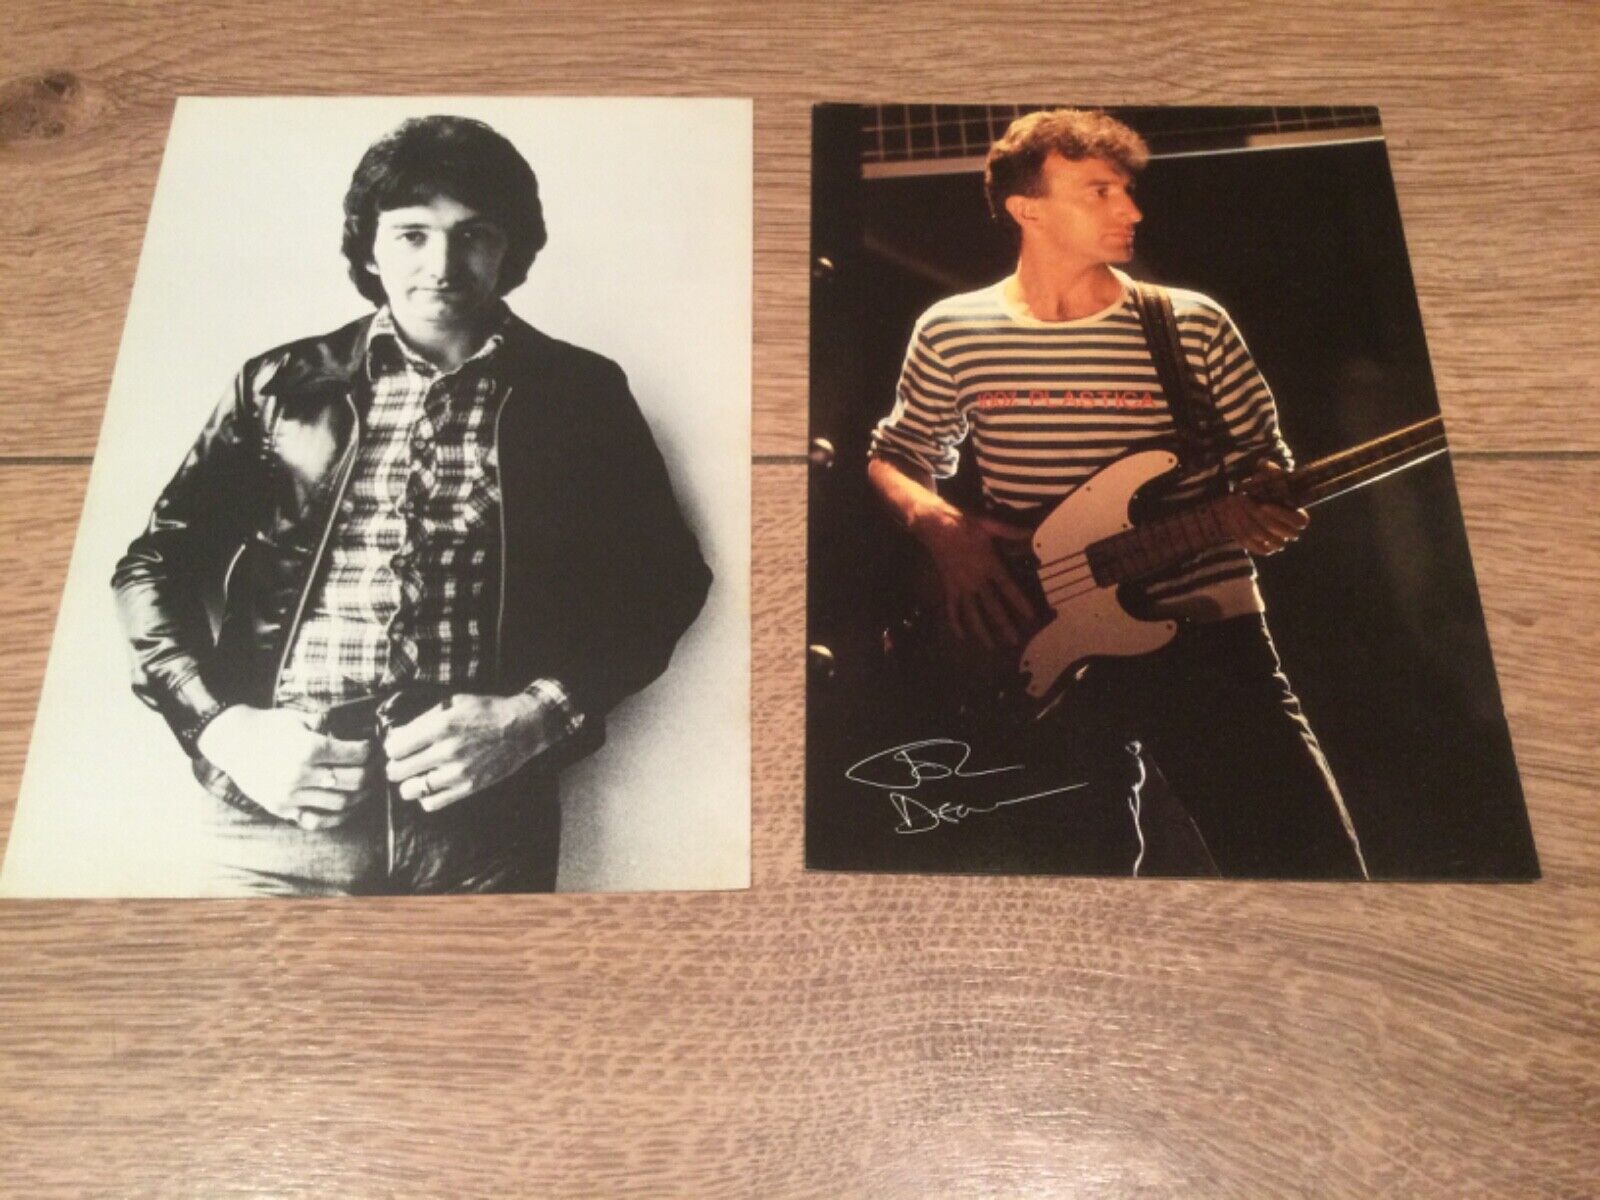 Queen - 2 x John Deacon photos (6x8) 1970s / 1980s - Fan Club Photos.